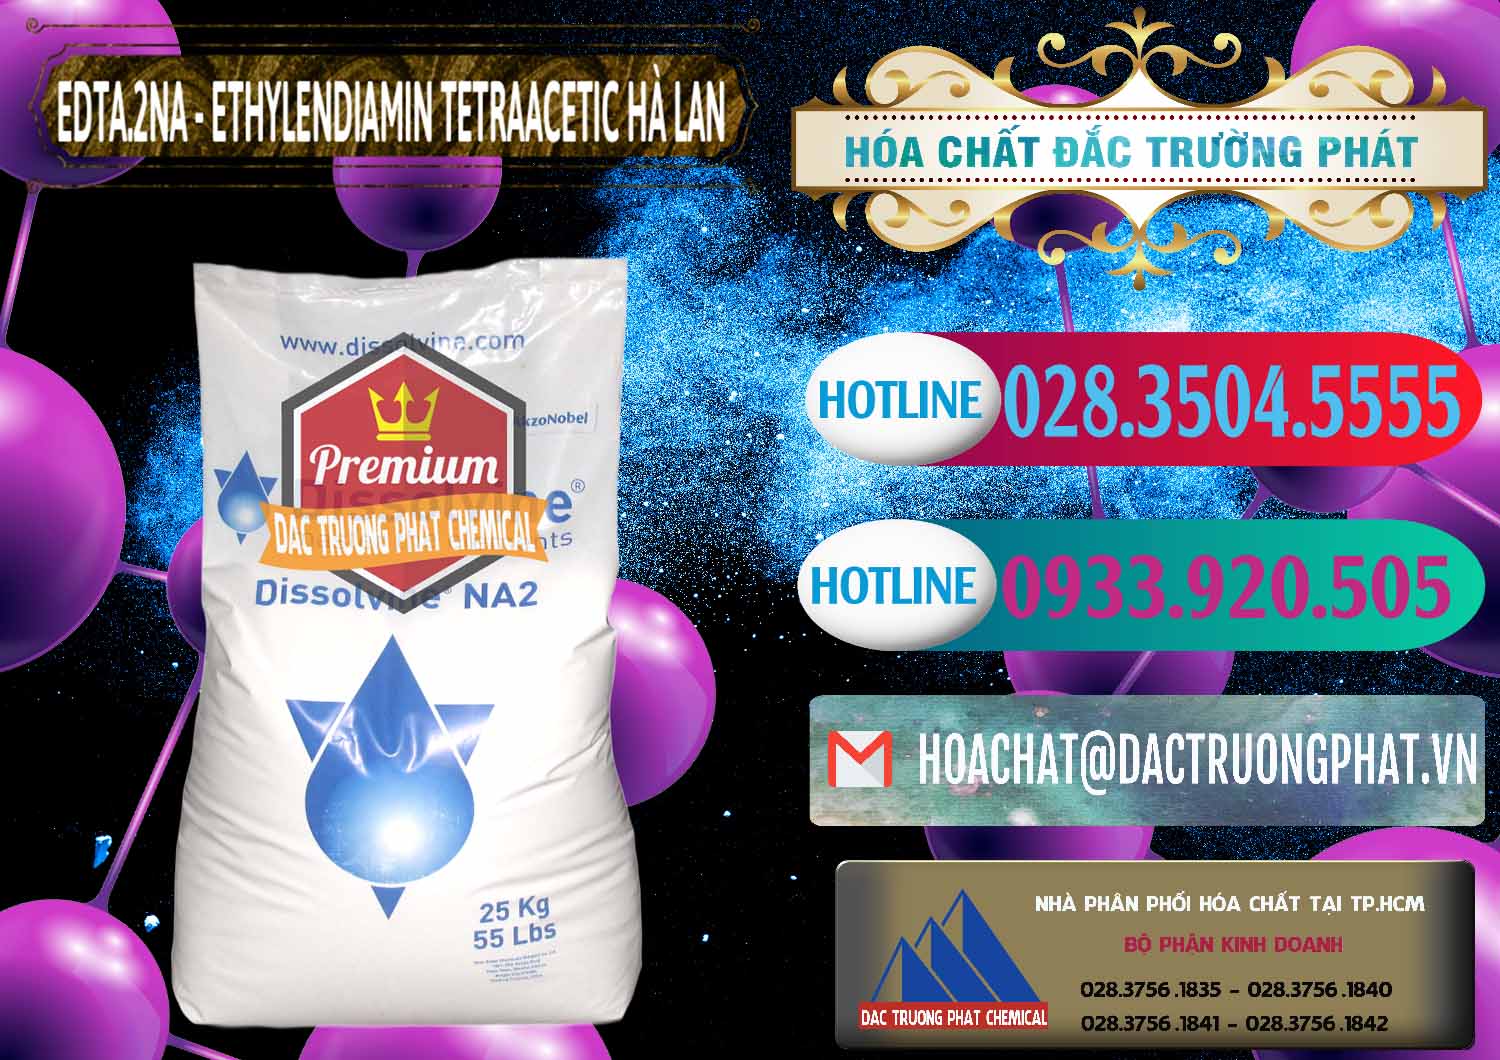 Công ty chuyên bán ( cung cấp ) EDTA.2NA - Ethylendiamin Tetraacetic Dissolvine Hà Lan Netherlands - 0064 - Nơi cung cấp ( phân phối ) hóa chất tại TP.HCM - truongphat.vn